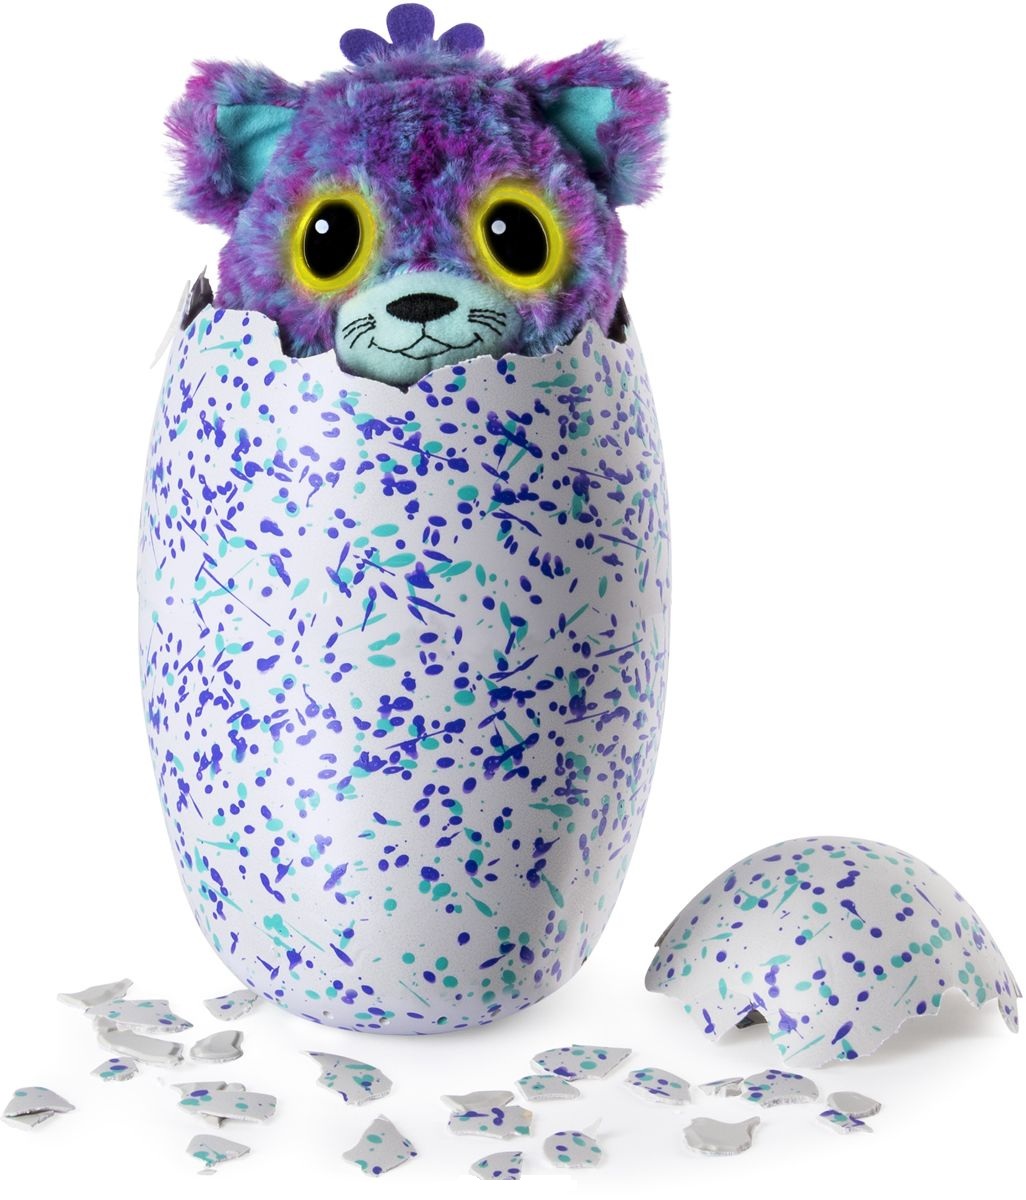 Игрушка Hatchimals сюрприз - Близнецы Котята интерактивные питомцы, вылупляющиеся из яйца  